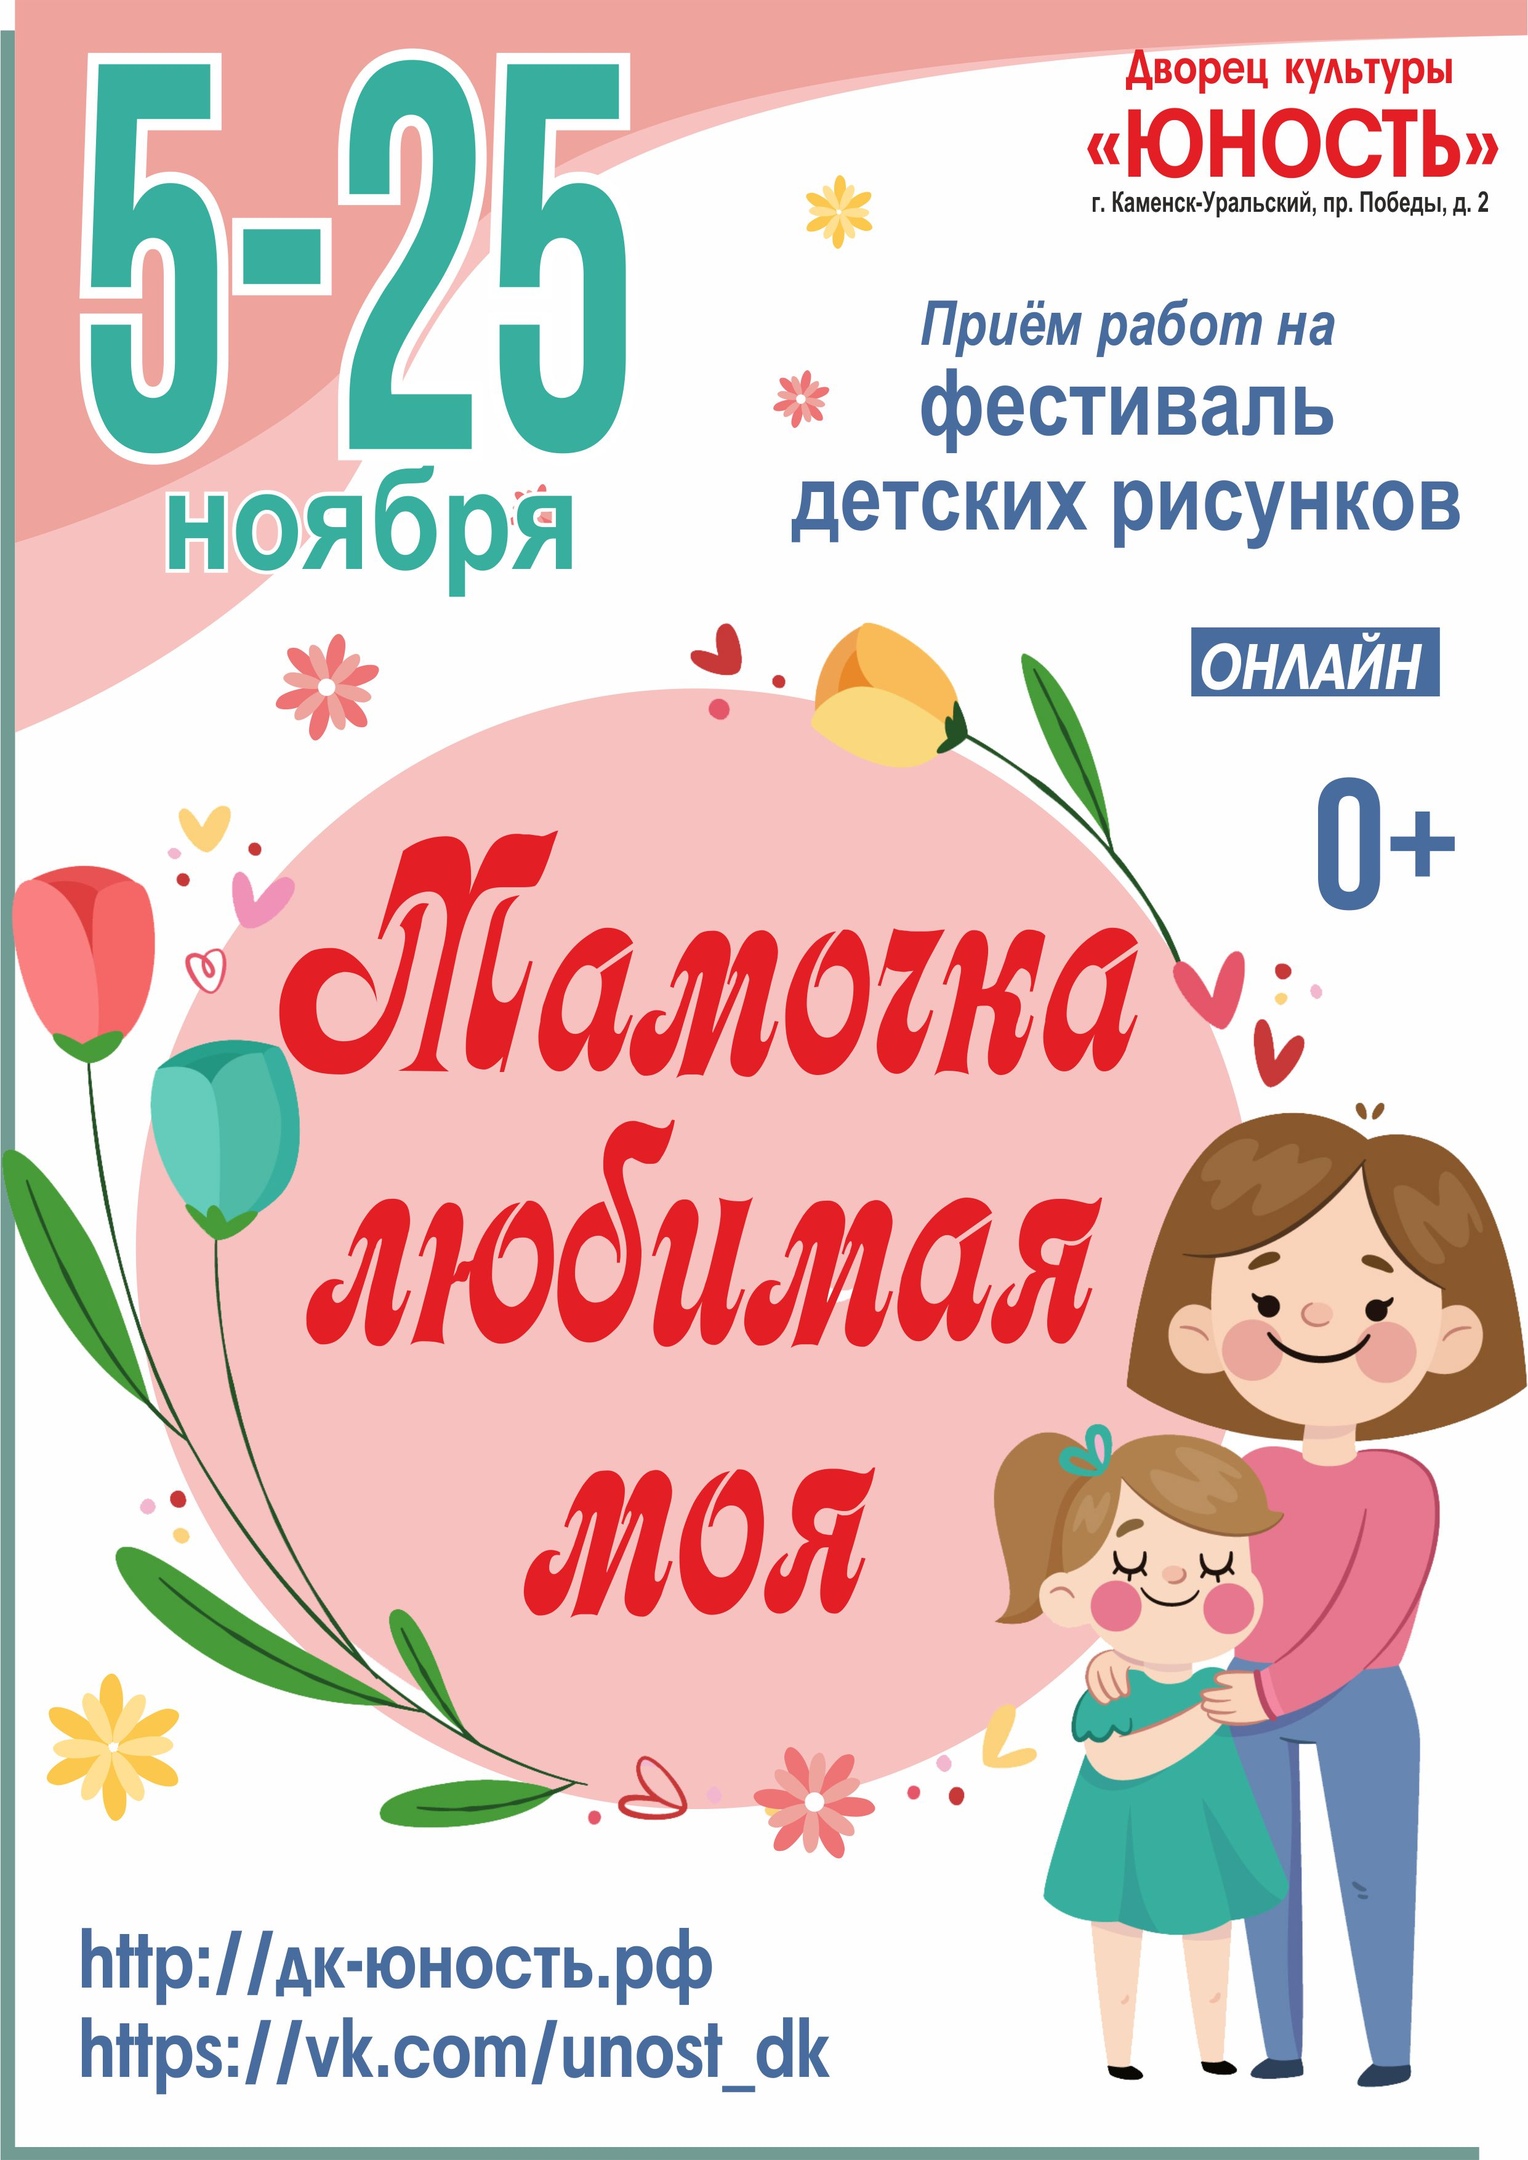 Стихи: Приветствия (визитка) для девочек на конкурс - ru »Сборни